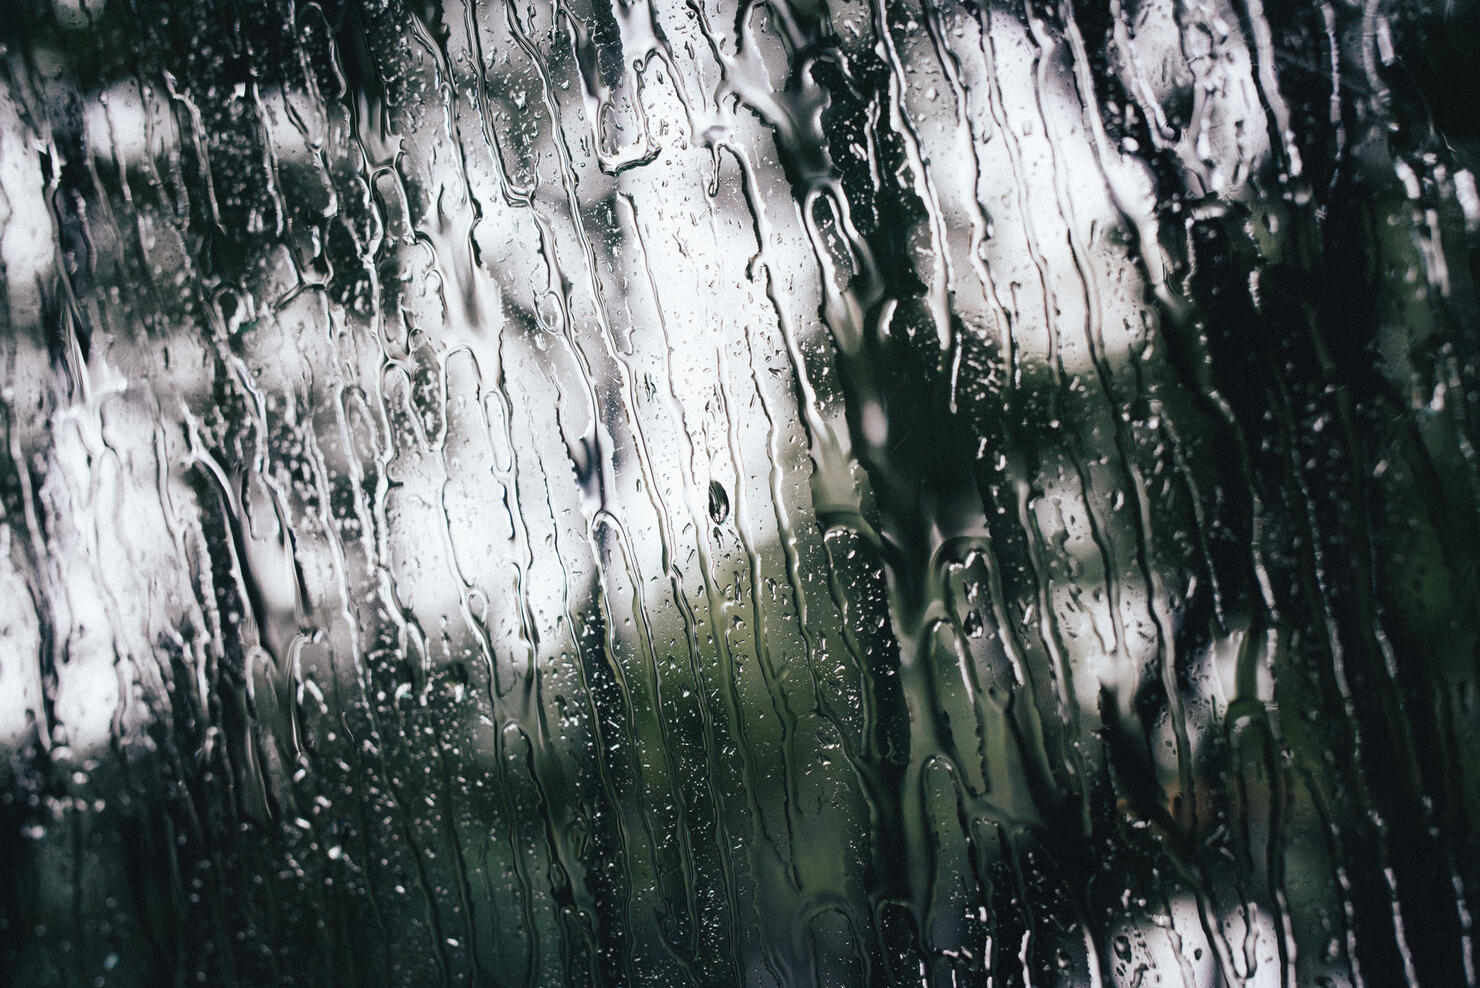 rain on window screen